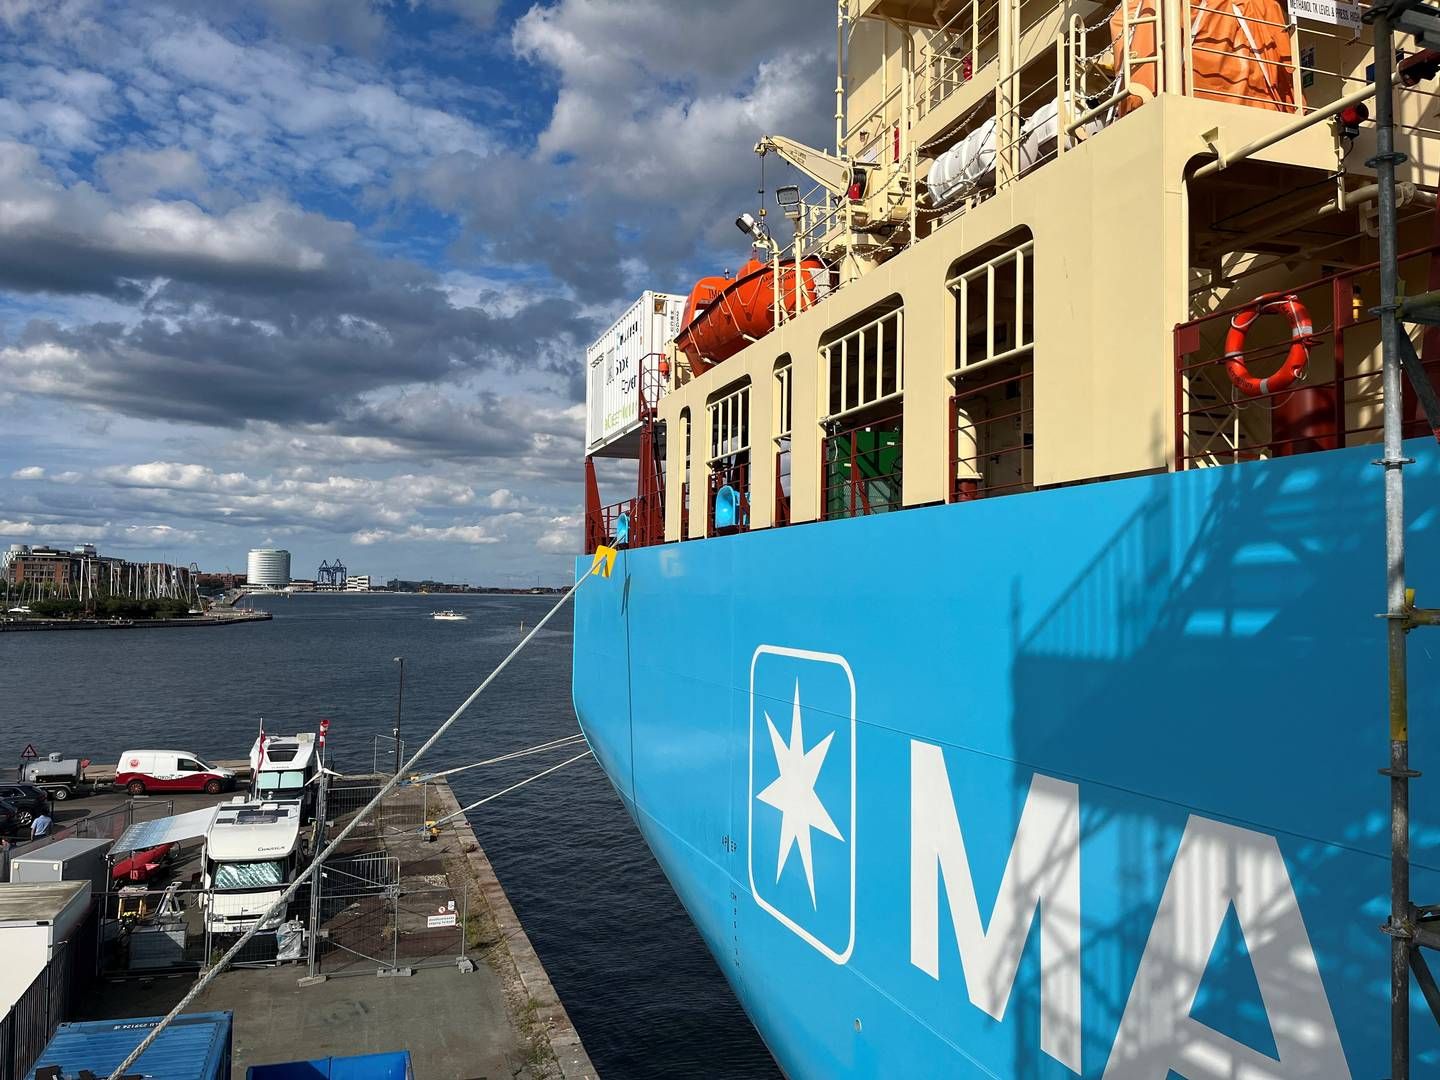 Verdens første containerskib, Laura Mærsk, der kan sejle på grøn metanol som skibsbrændstof. | Foto: Jacob Gronholt-Pedersen/Reuters/Ritzau Scanpix